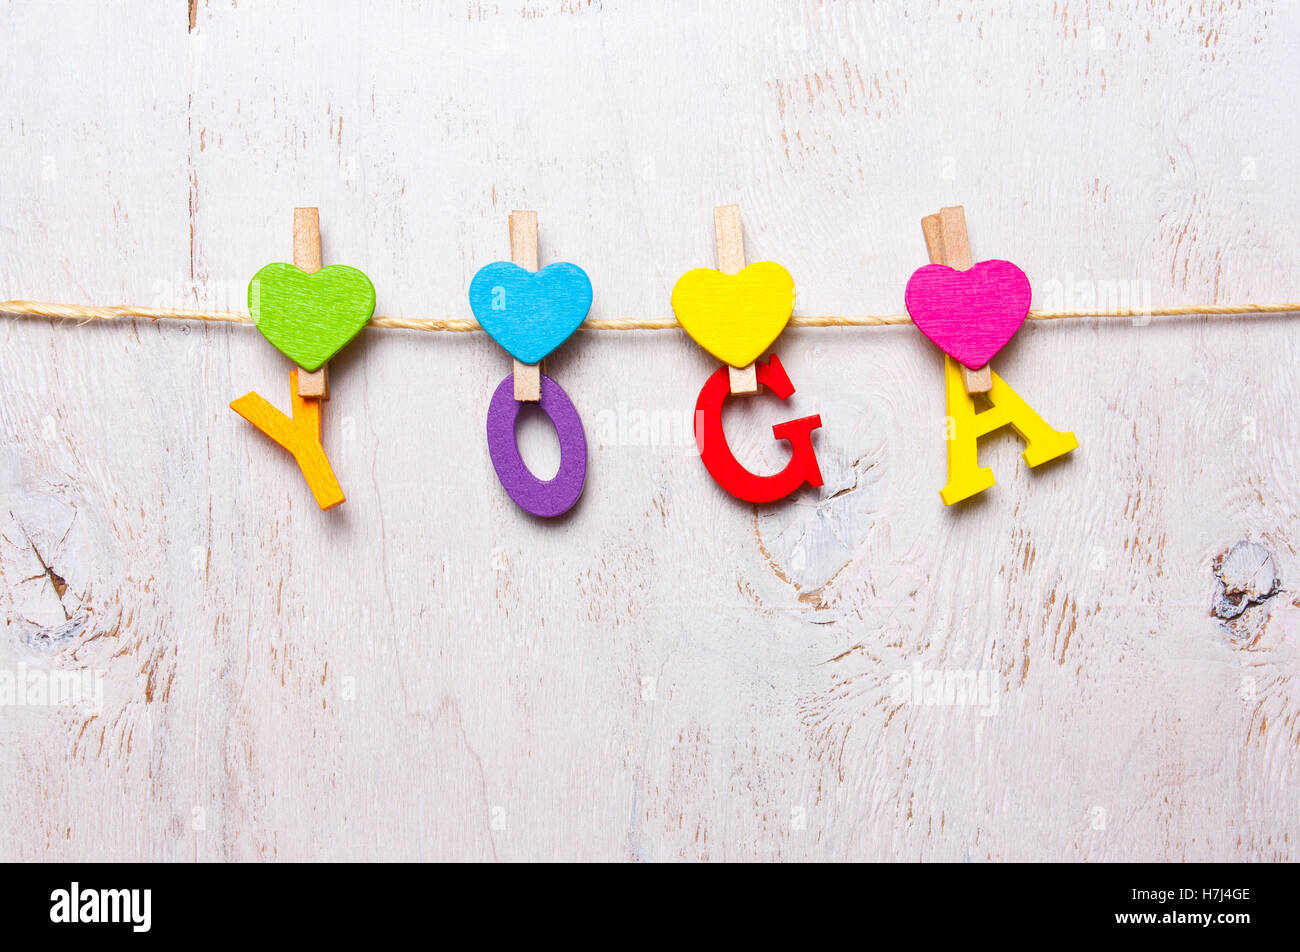 La parola "yoga" delle lettere colorate su sfondo bianco Foto Stock